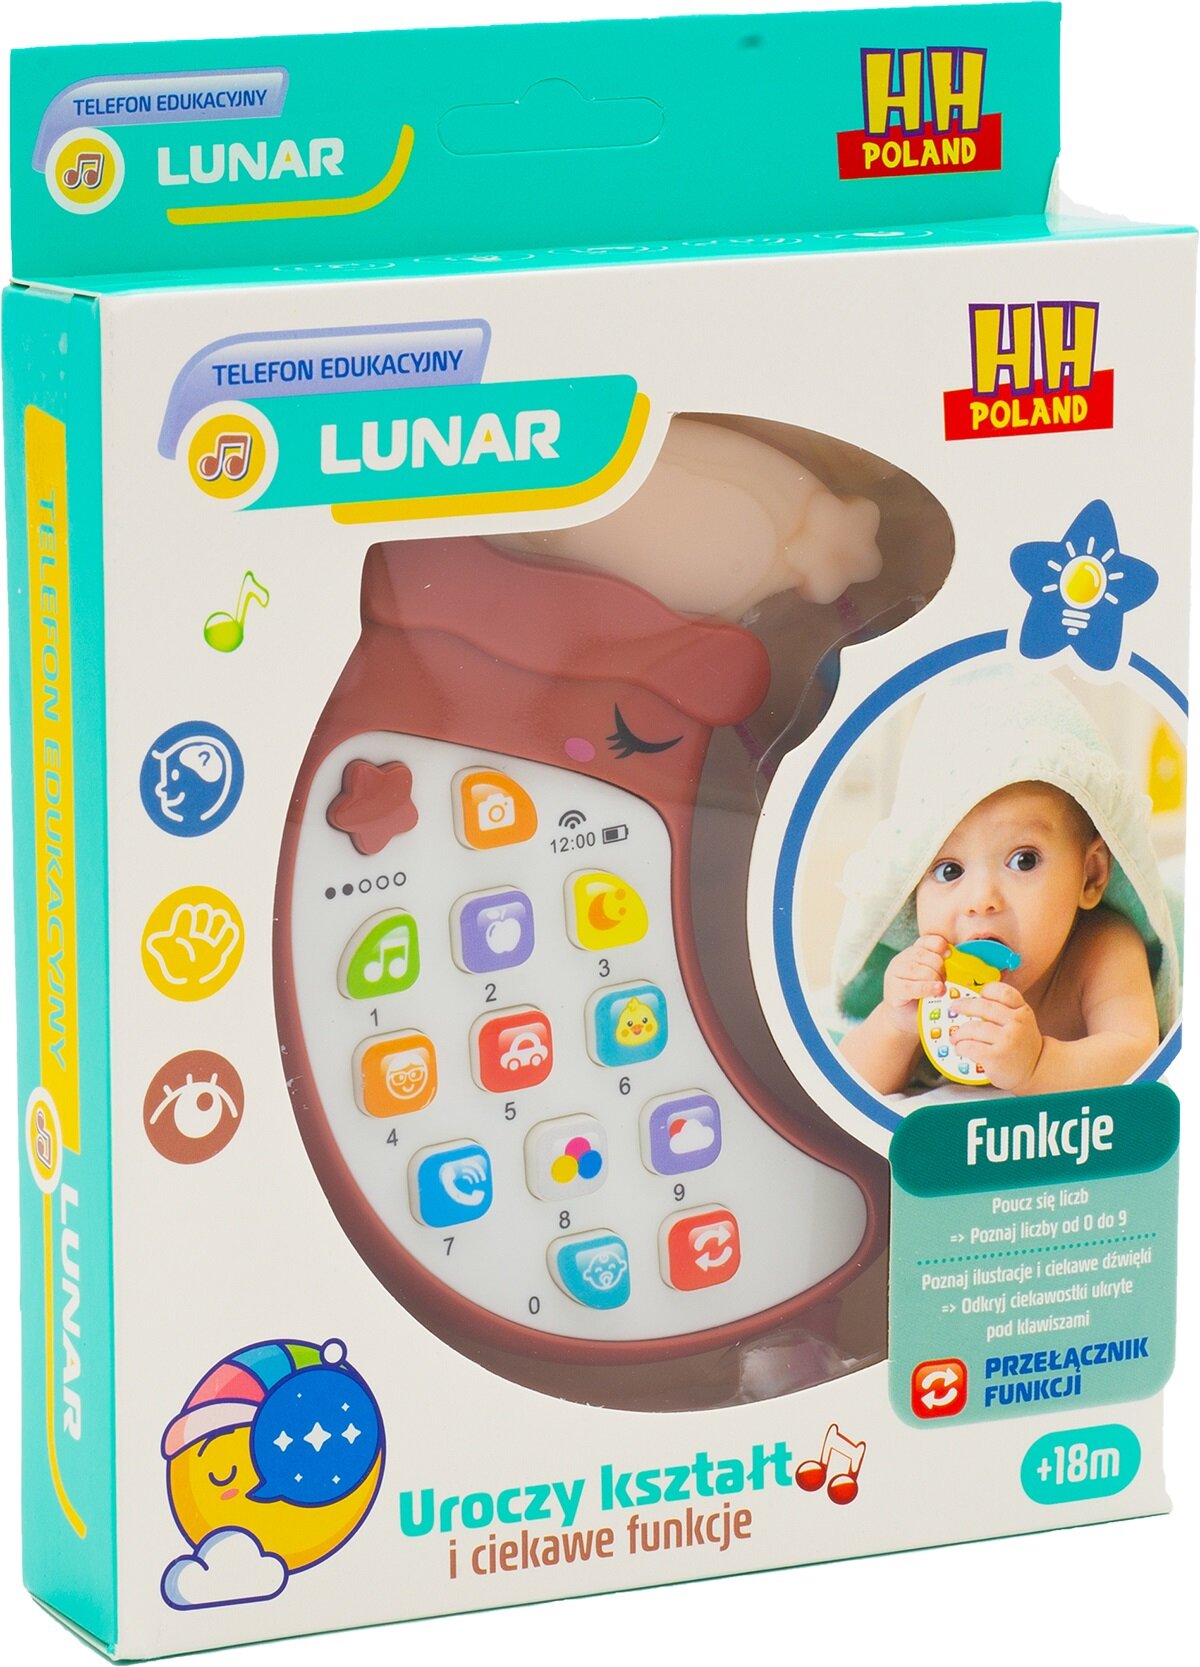 HH POLAND Telefon Lunar DM545373 Zabawka edukacyjna - niskie ceny i opinie  w Media Expert